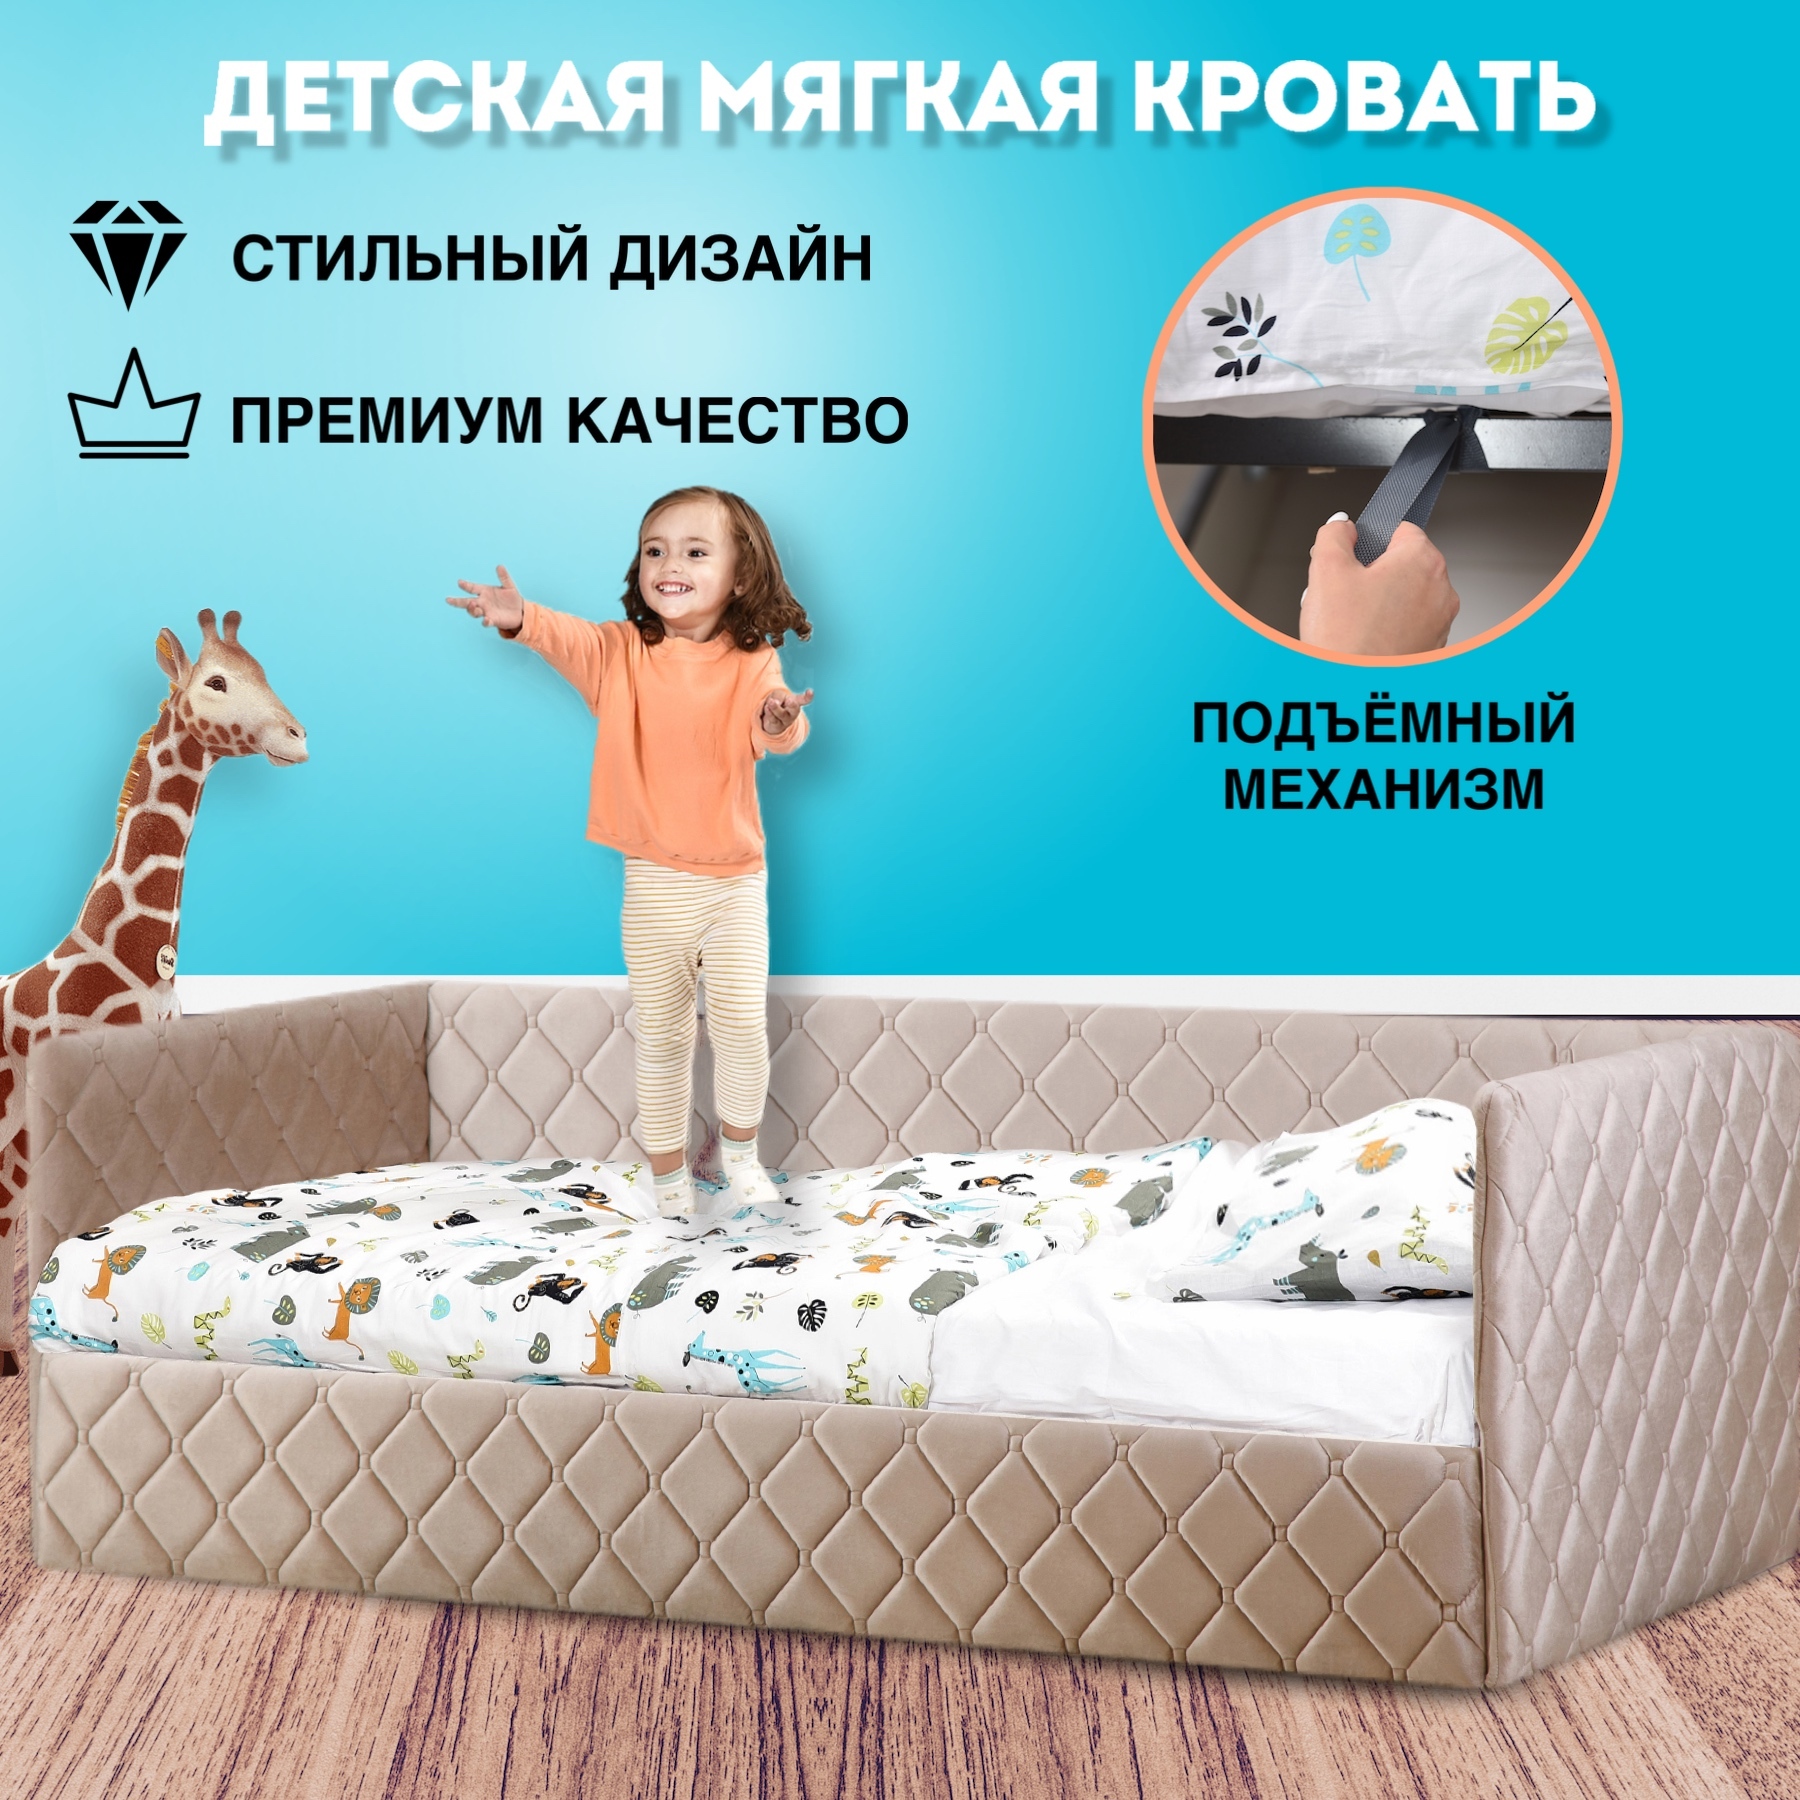 Супер кровати для детей